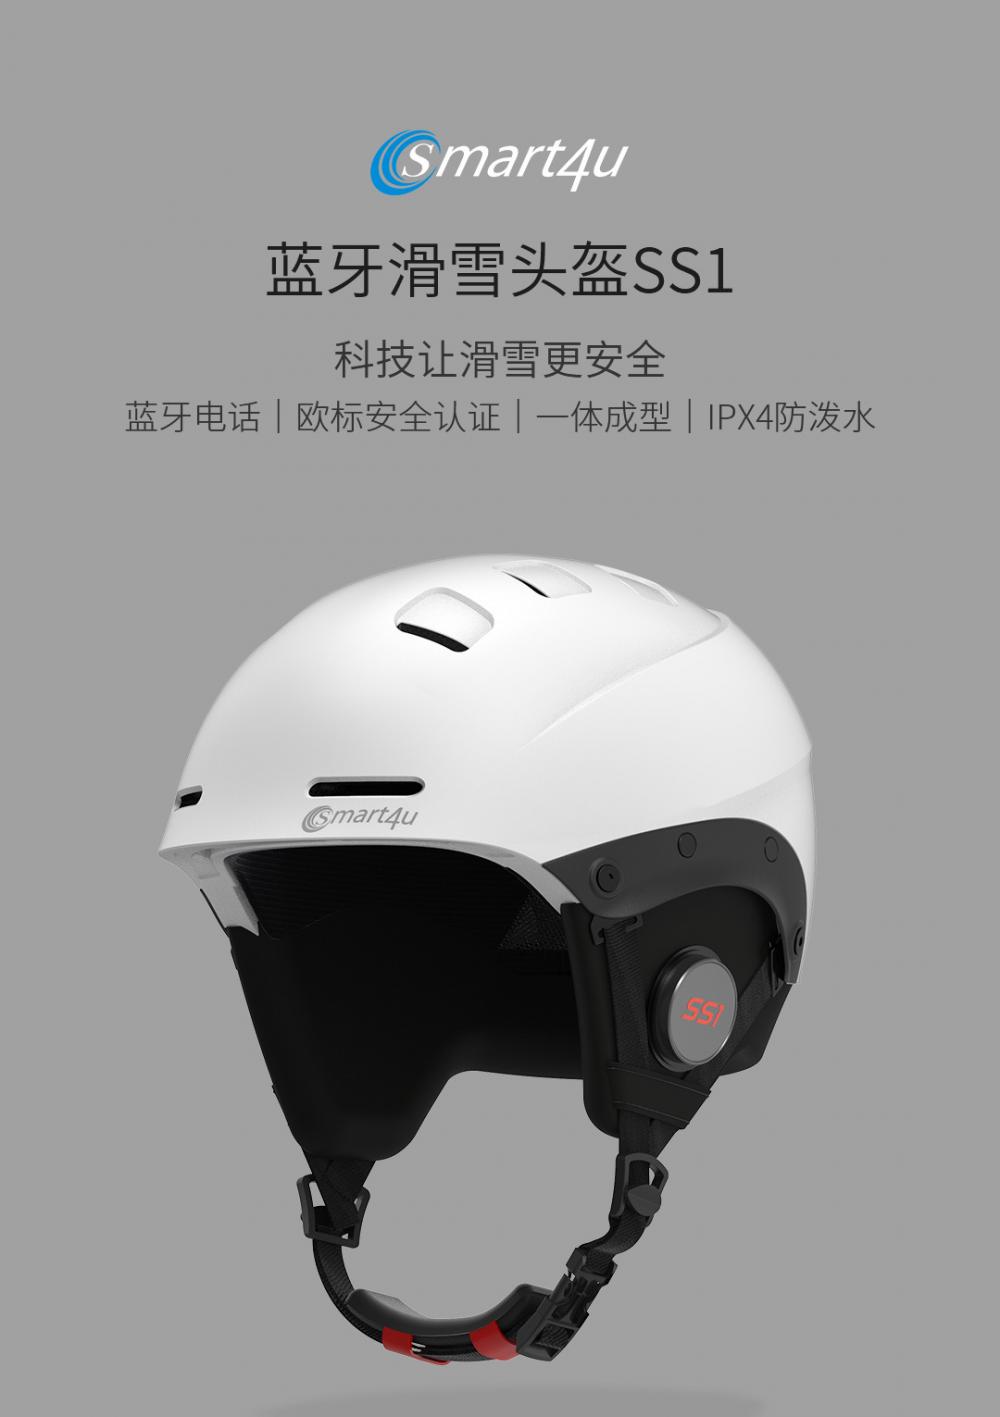 Smart4u Outdoor Helmet